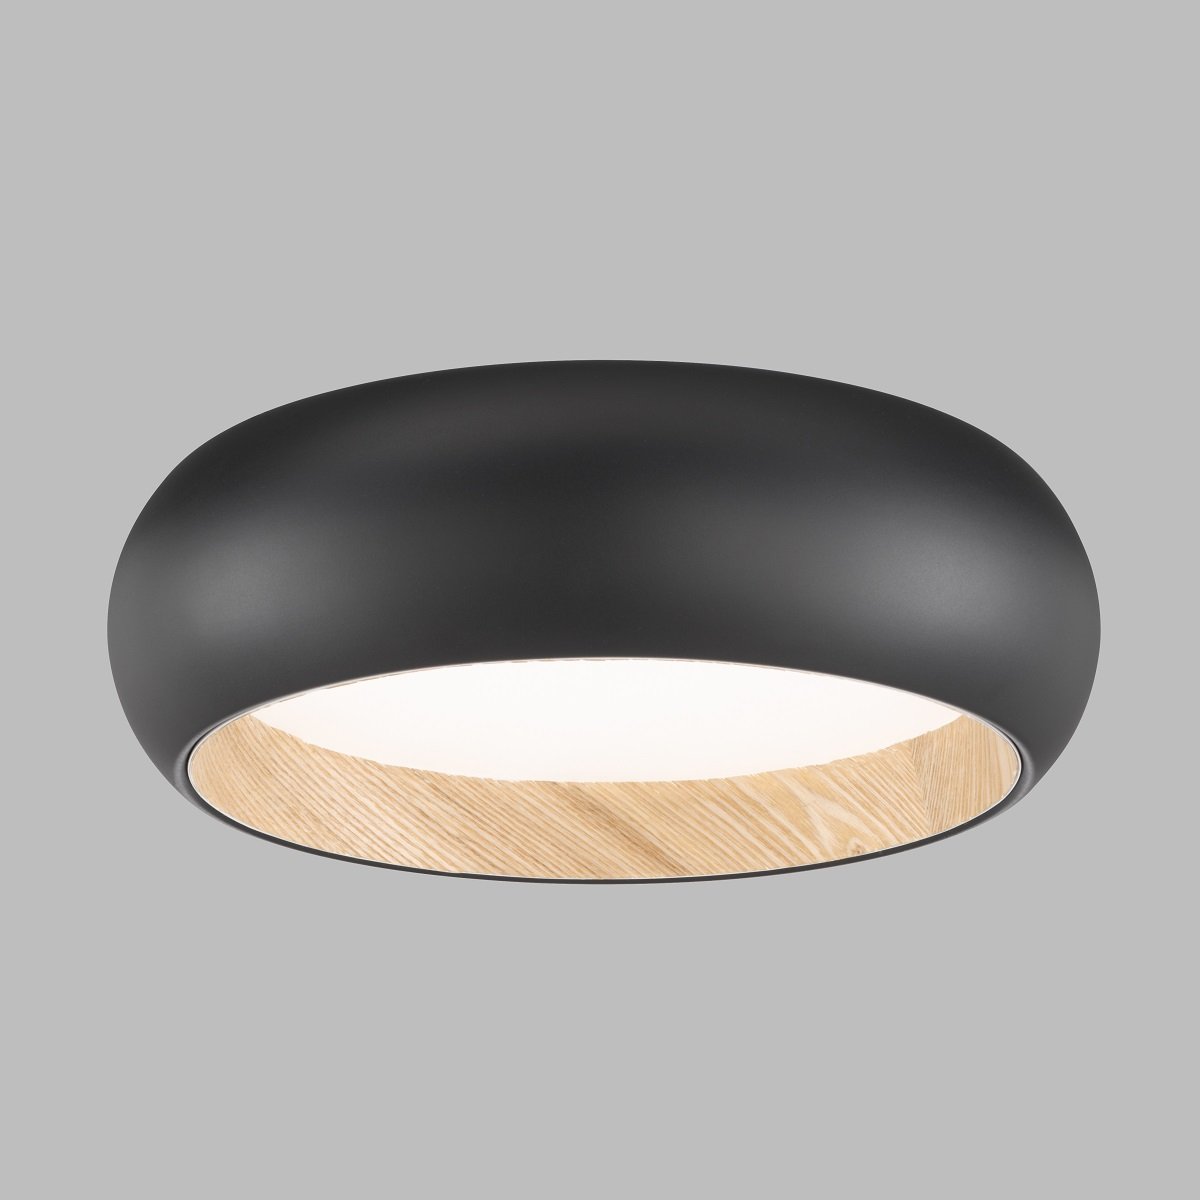 & SCHÖNER LED natur Lampen eiche WOHNEN-Kollektion Shop Deckenleuchte kaufen schwarz im Wood online Leuchten 821338 -->